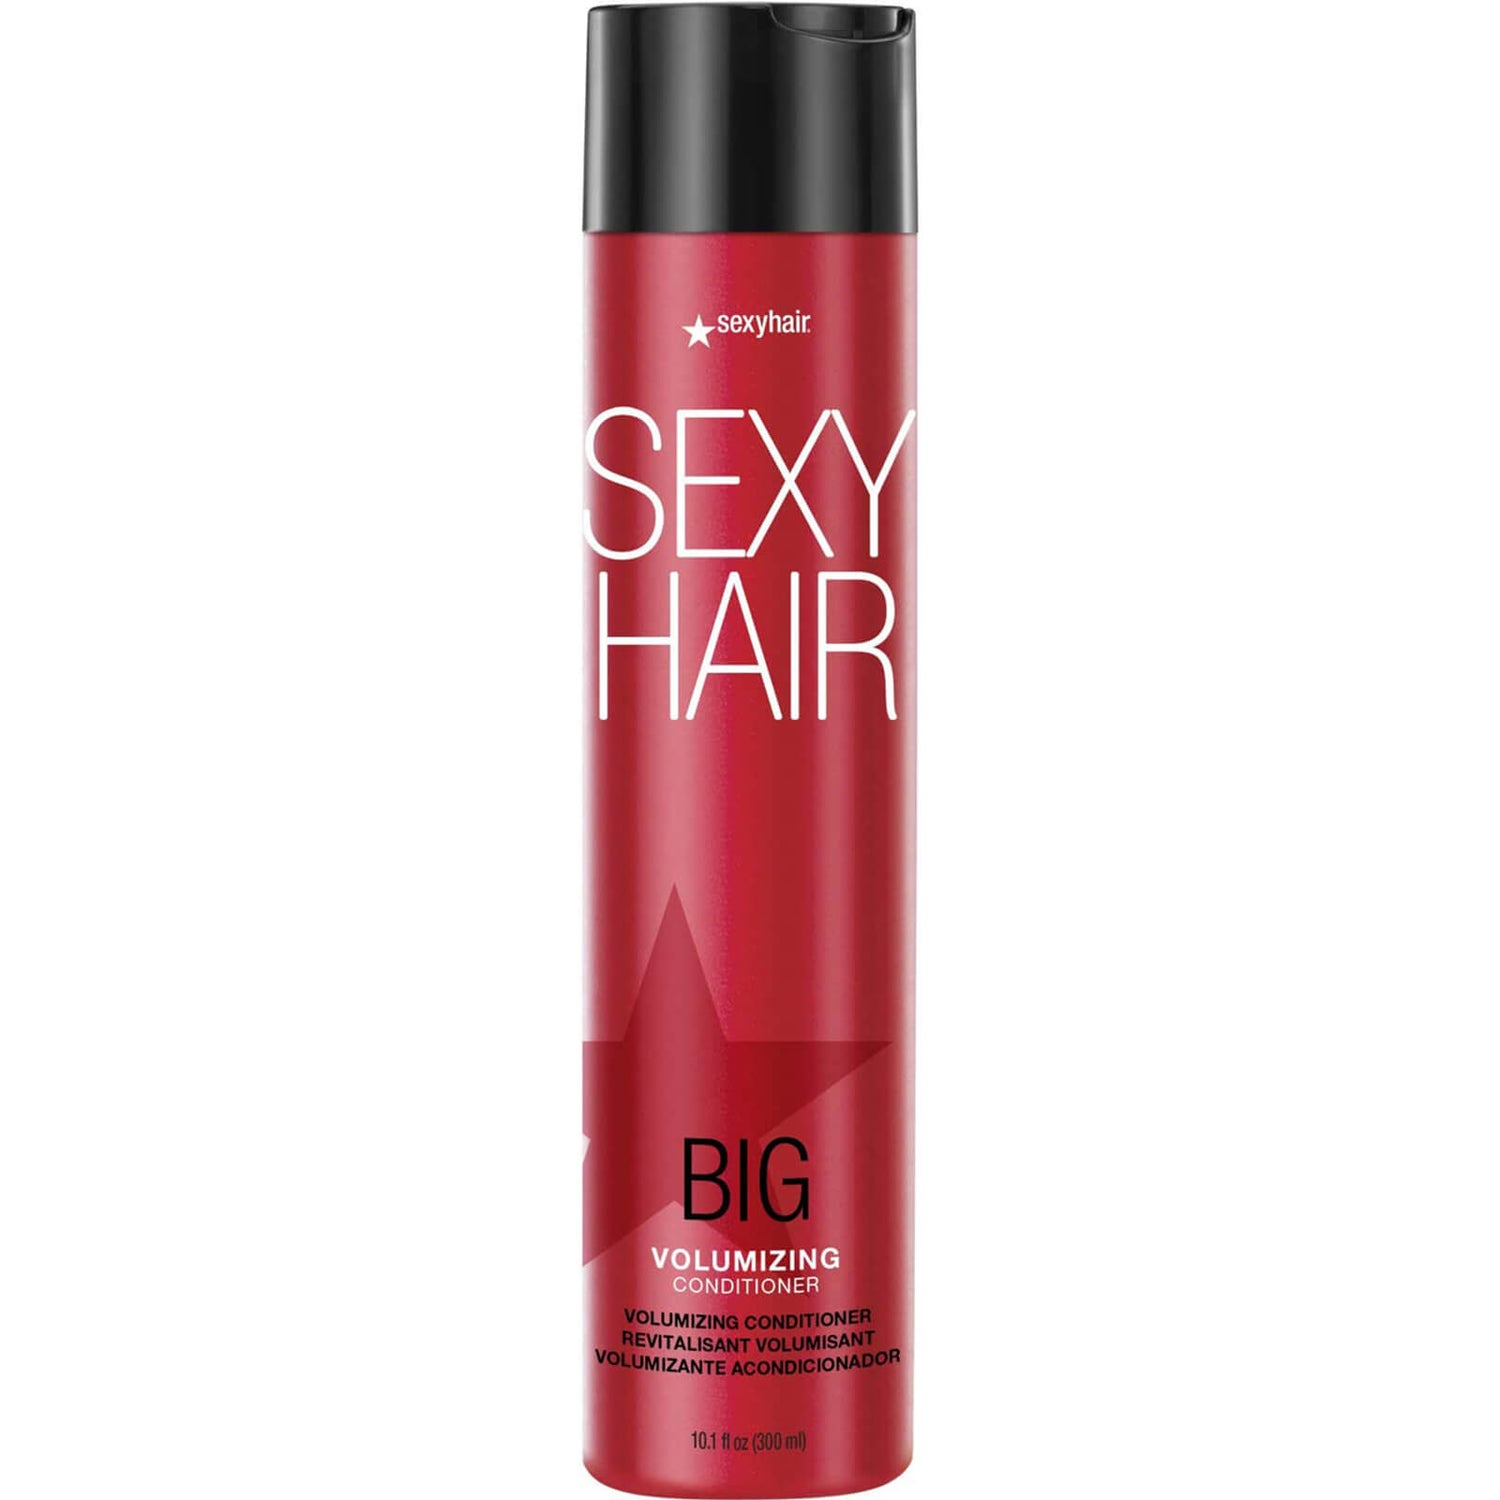 Acondicionador voluminizador Big Sexy Hair de 300 ml